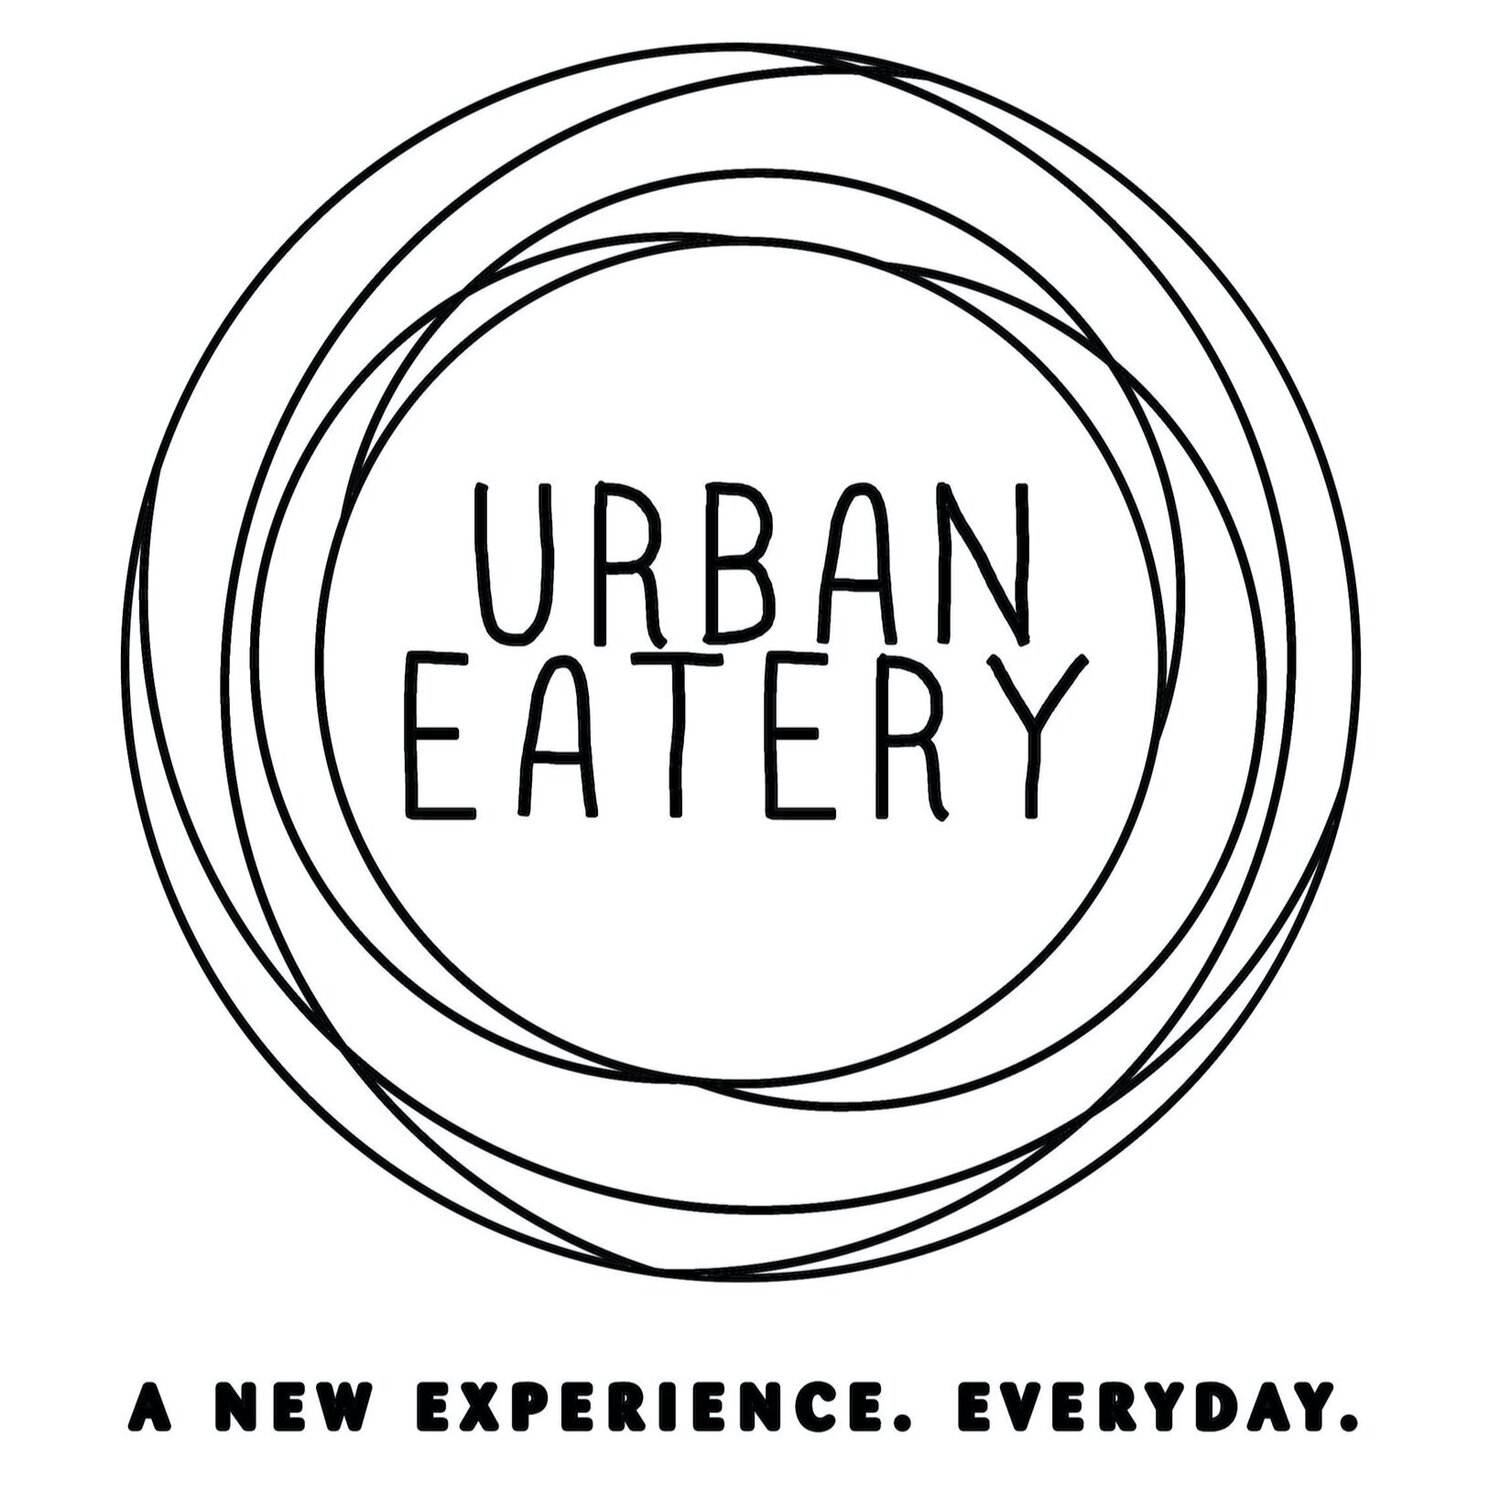 Urban Eatery